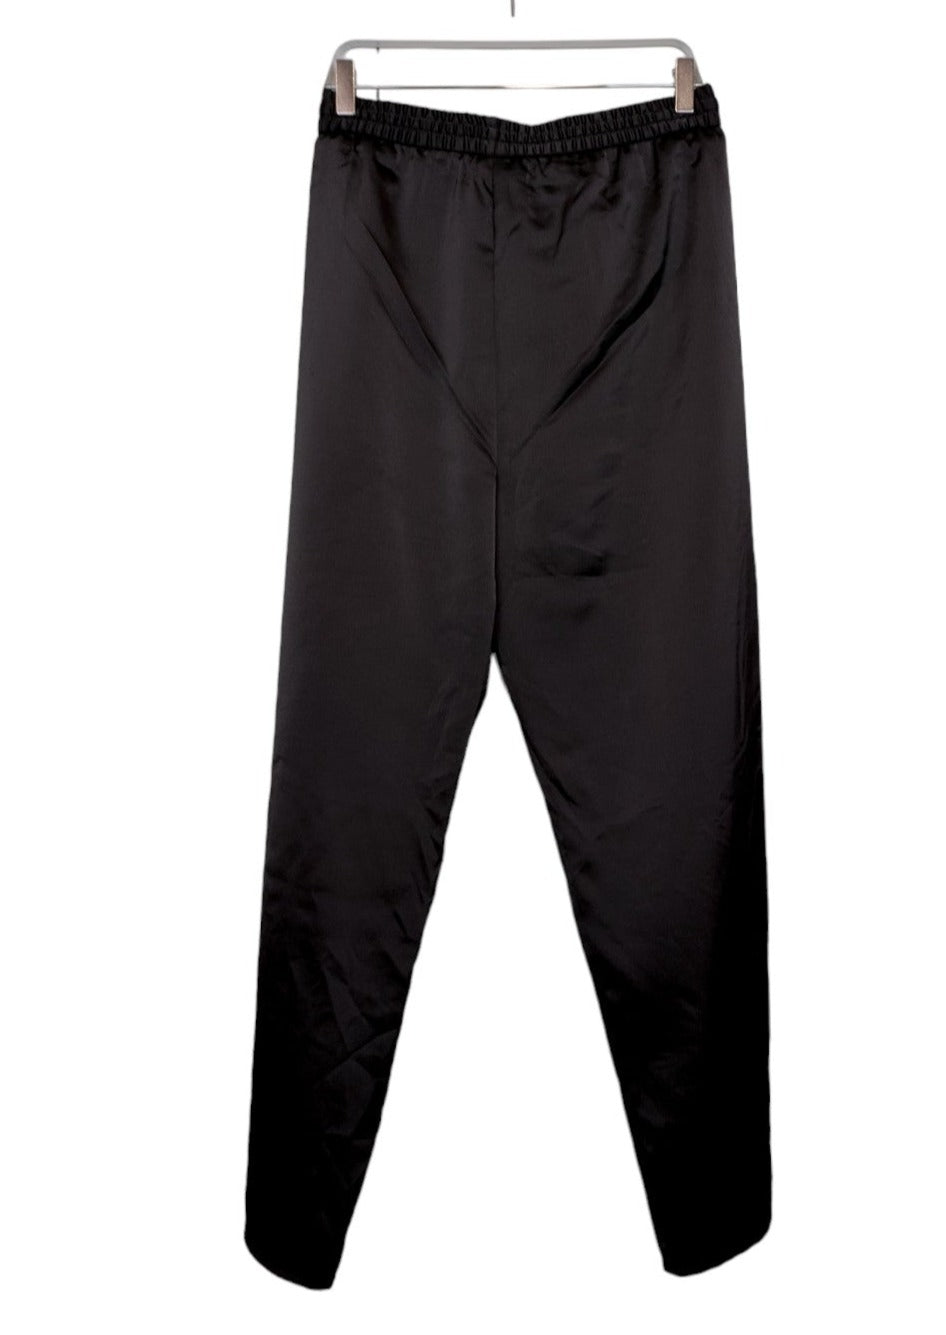 Σατέν Γυναικεία Παντελόνα EMILIA LAY σε Μαύρο χρώμα (2XL)